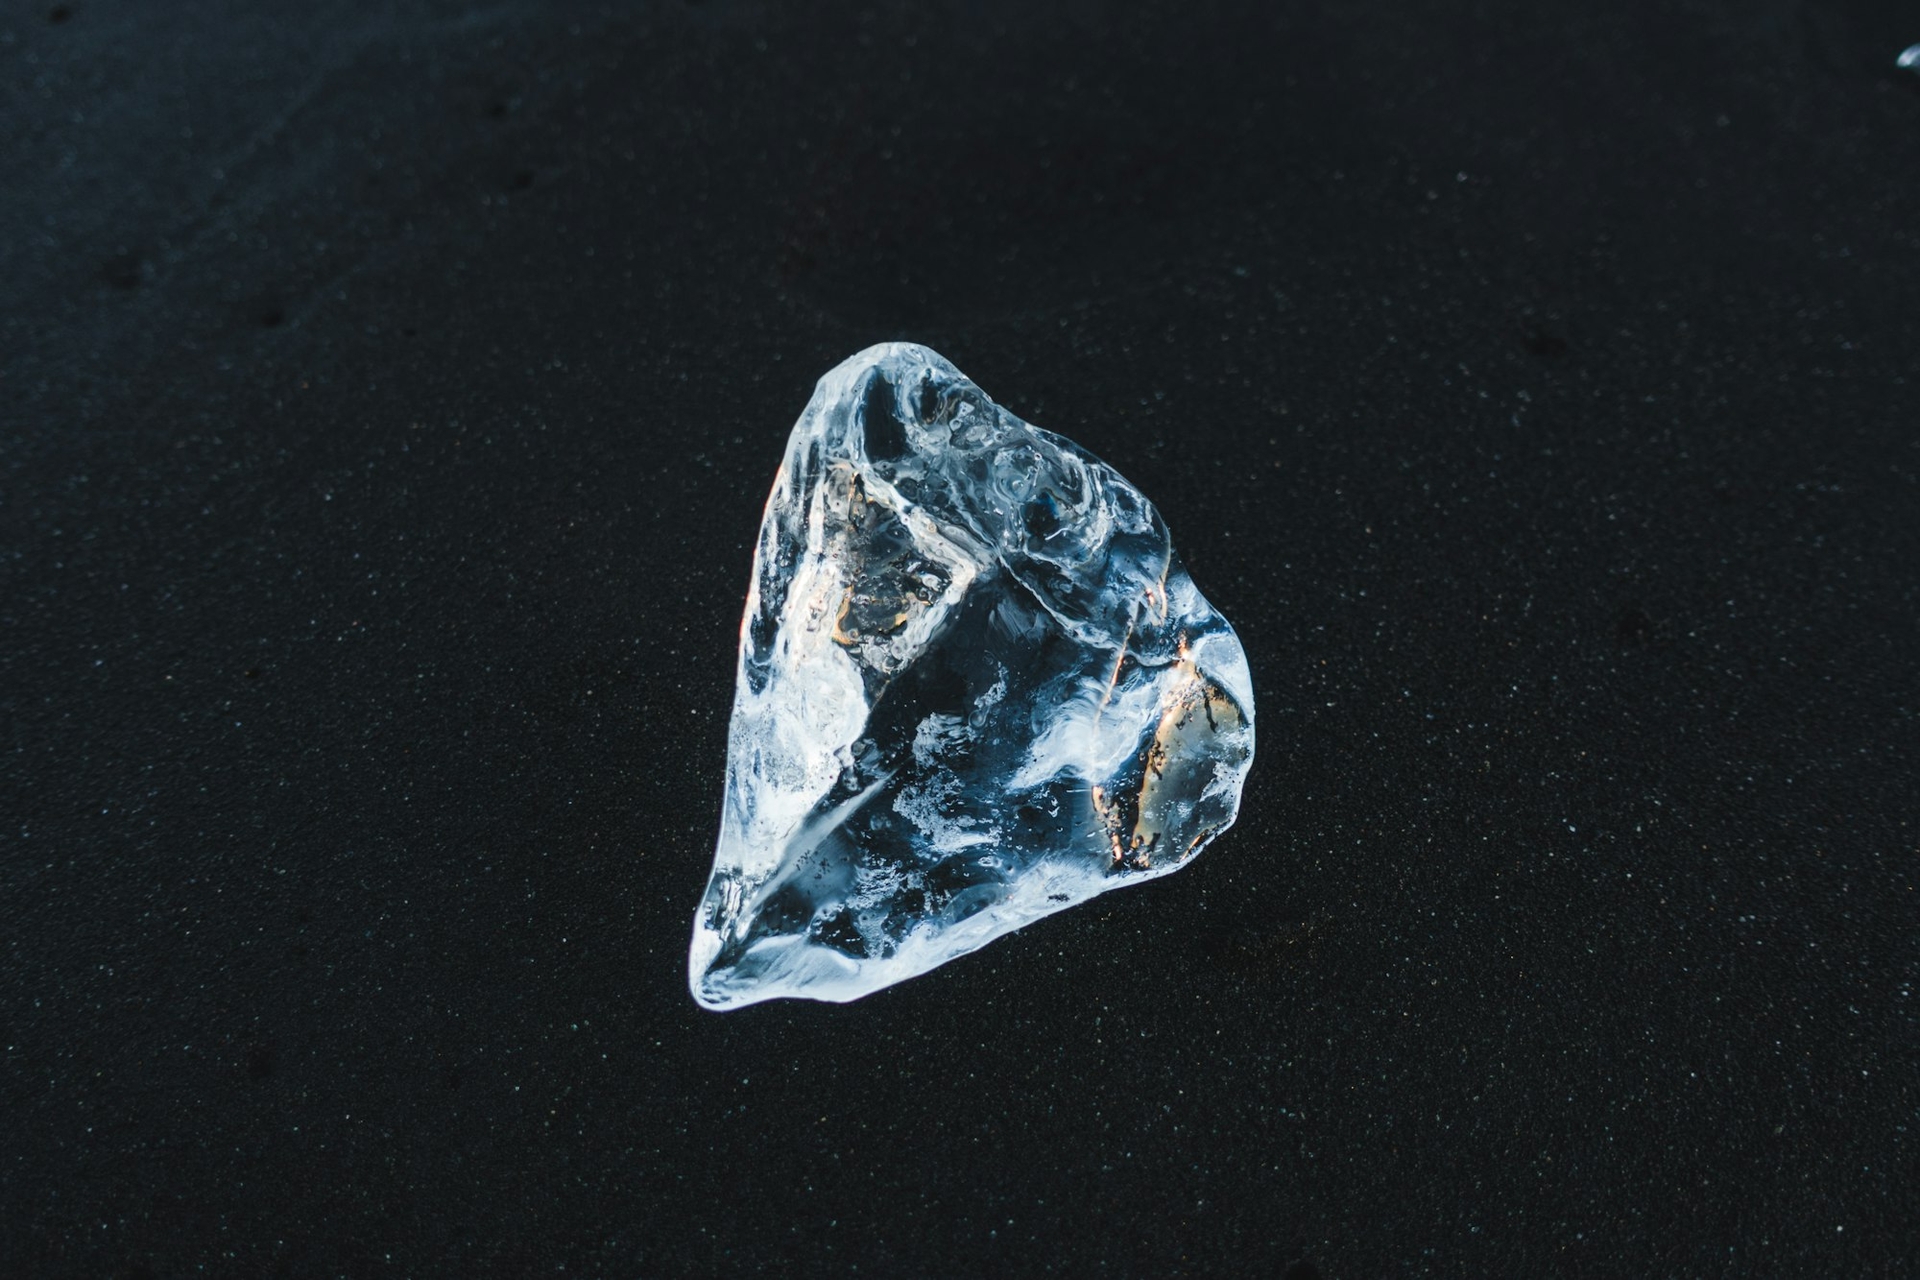 Áp lực không làm nên kim cương: Từ góc nhìn vật liệu học đến sự nam tính "mỏng manh"